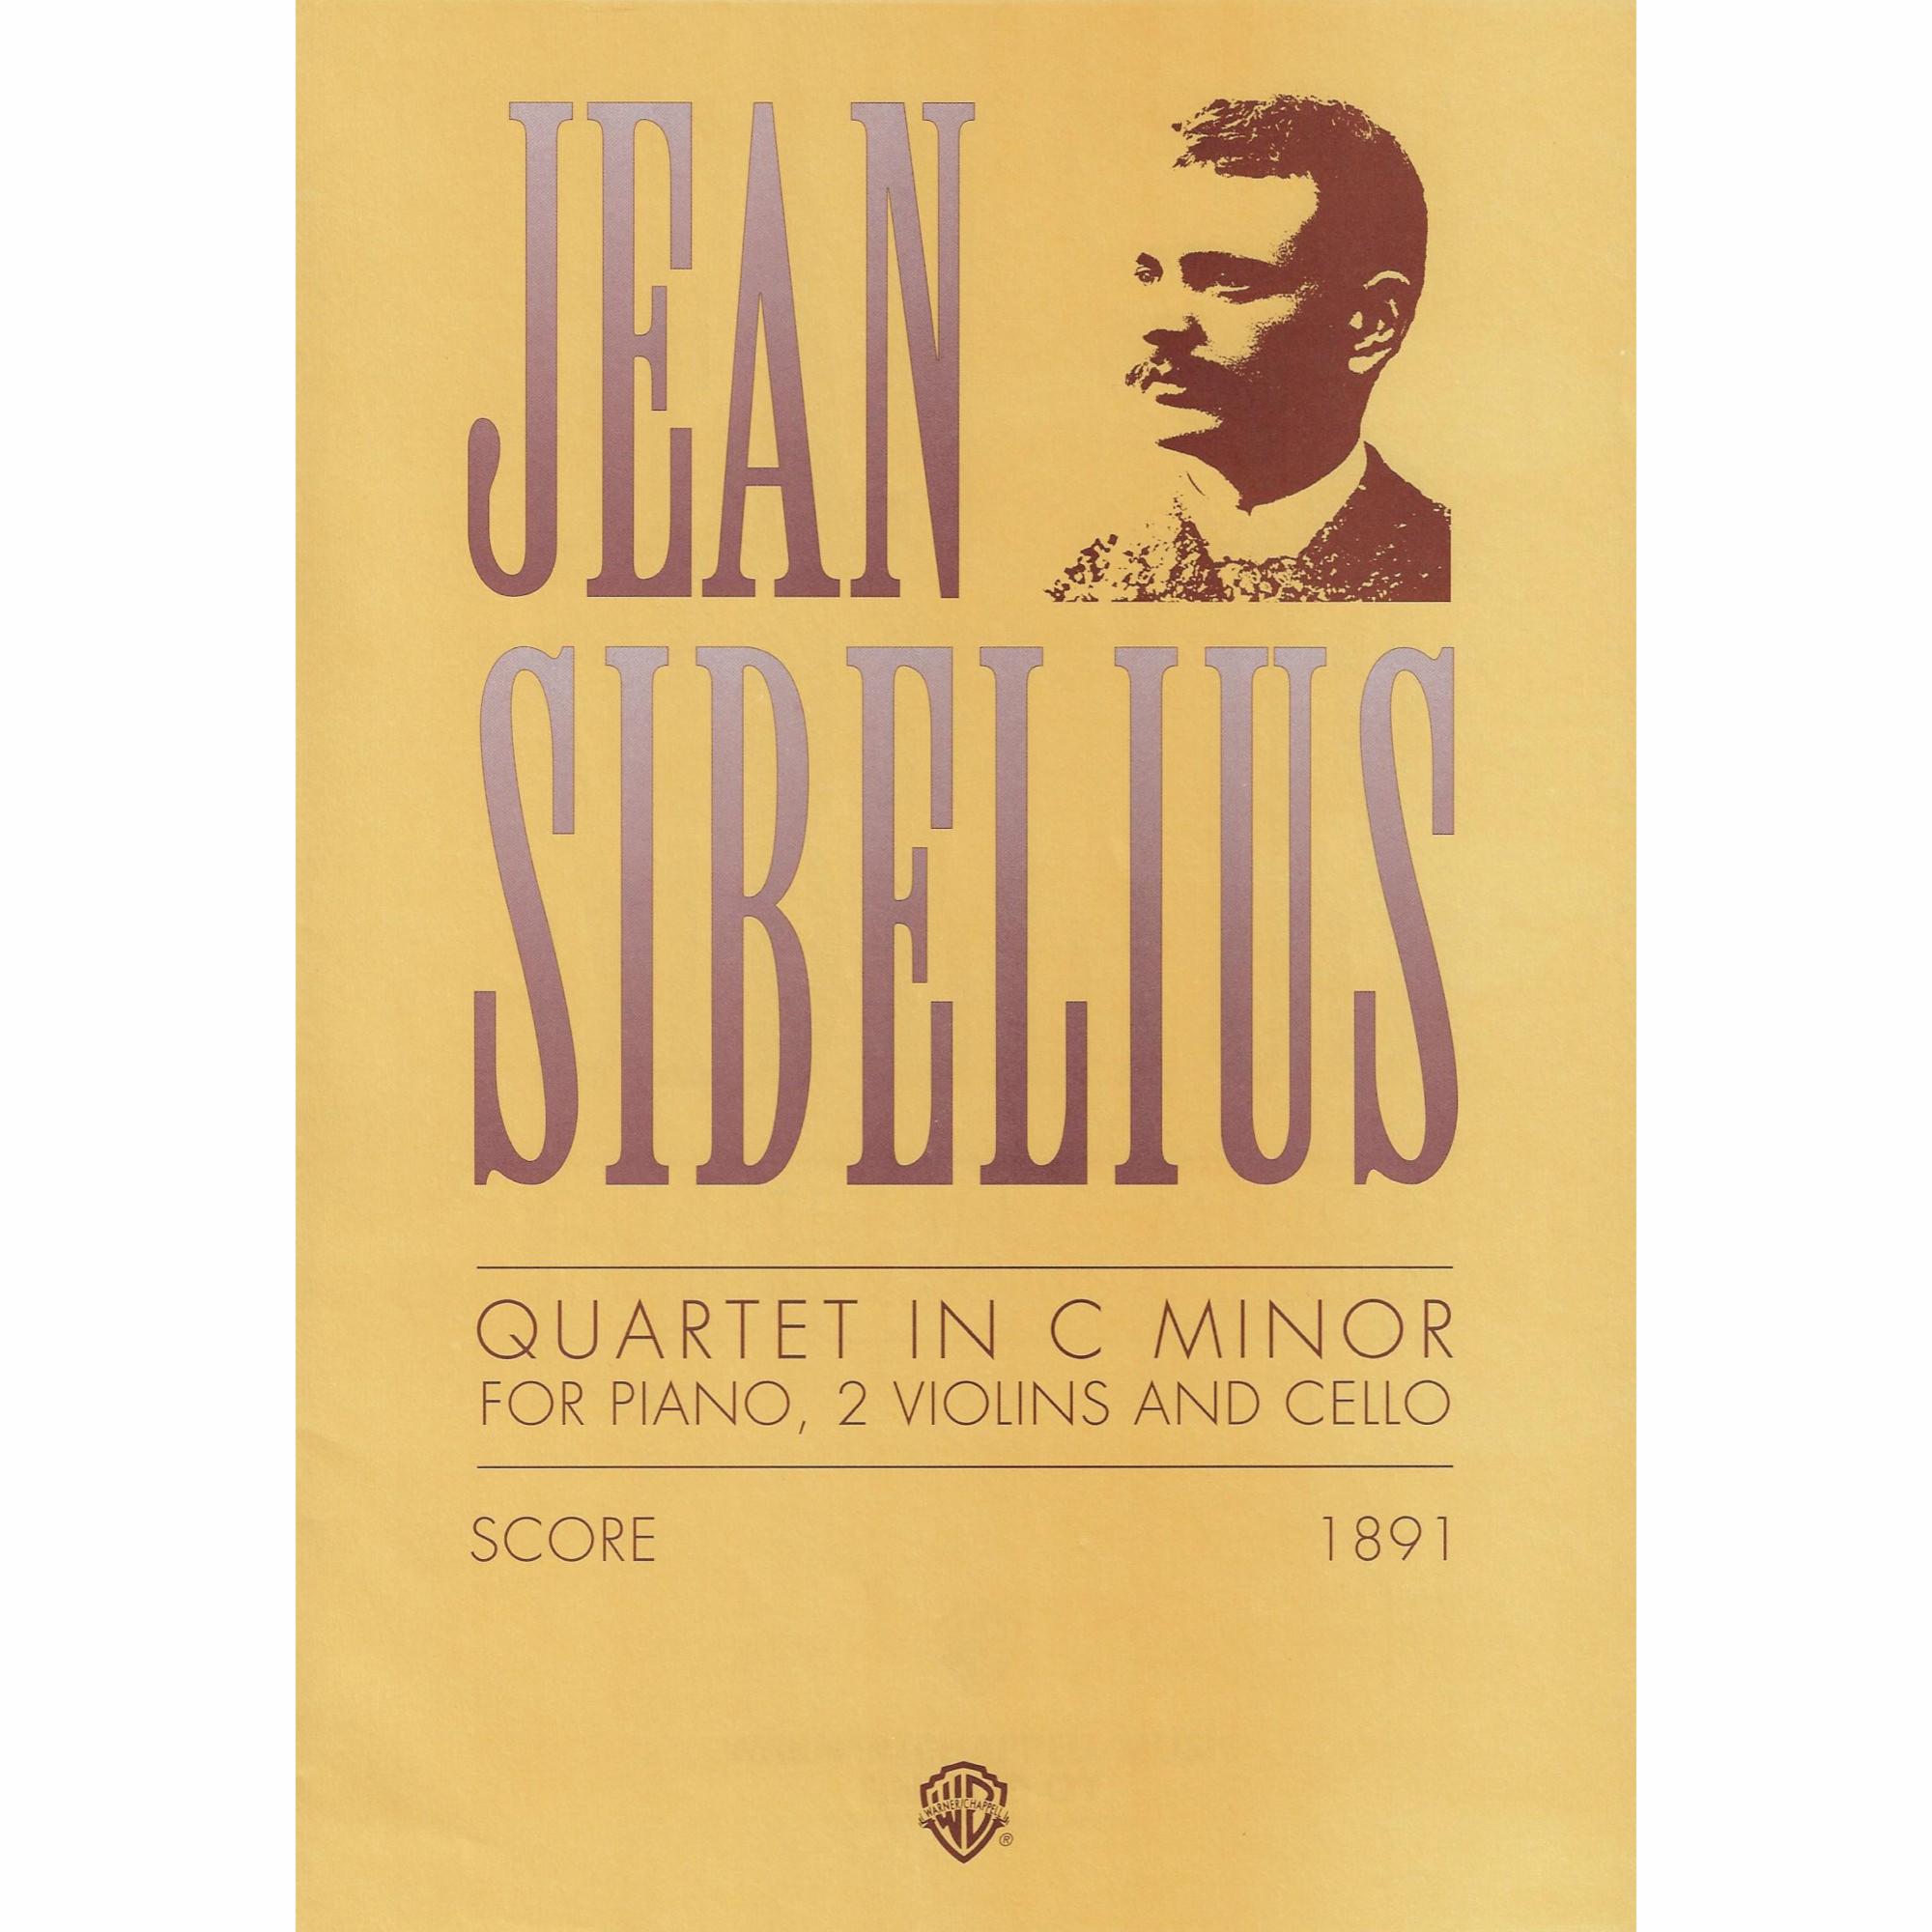 Sibelius -- Piano Quartet in C Minor (1891)